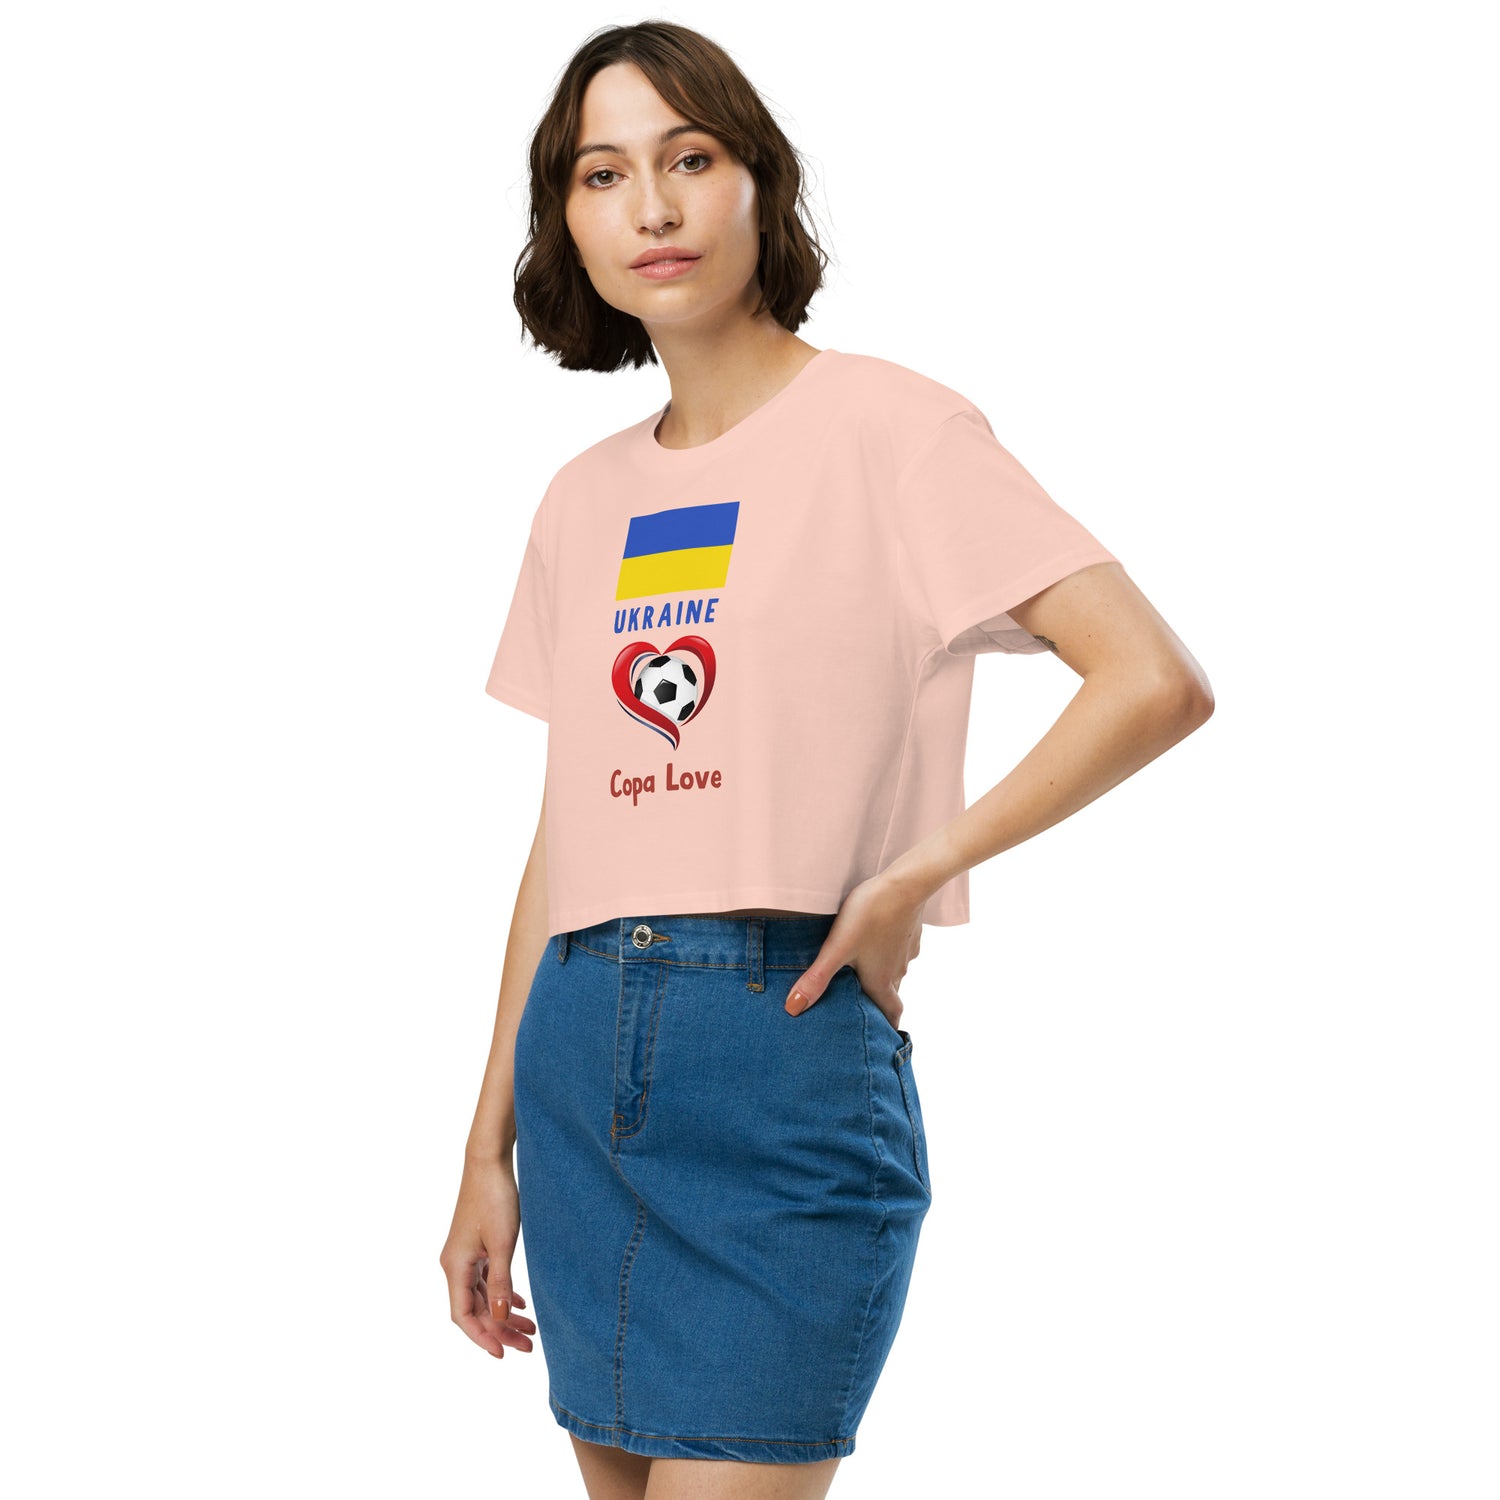 UKRAINE - Copa Love Women’s crop top